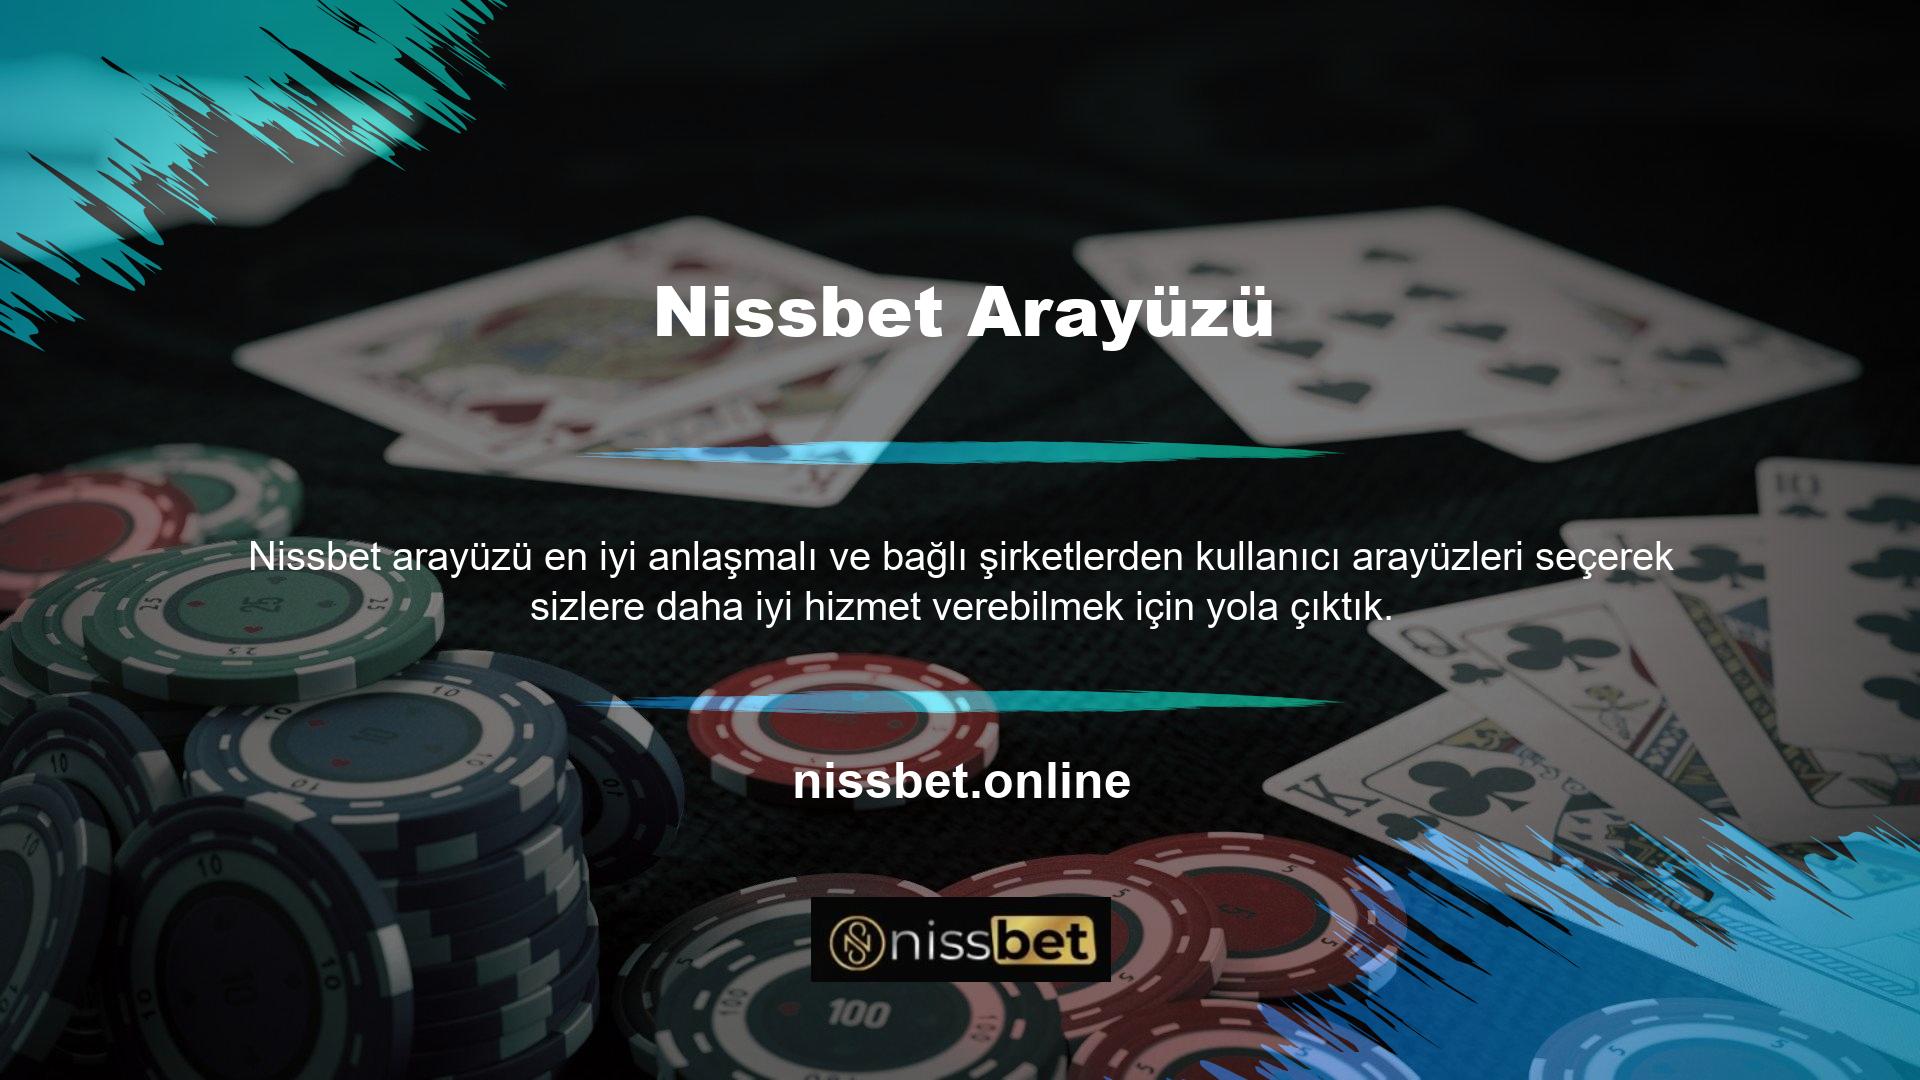 Tüm arayüz ve sistem yeniliklerine rağmen Nissbet, ödül kategorisini sürekli olarak geliştirmektedir